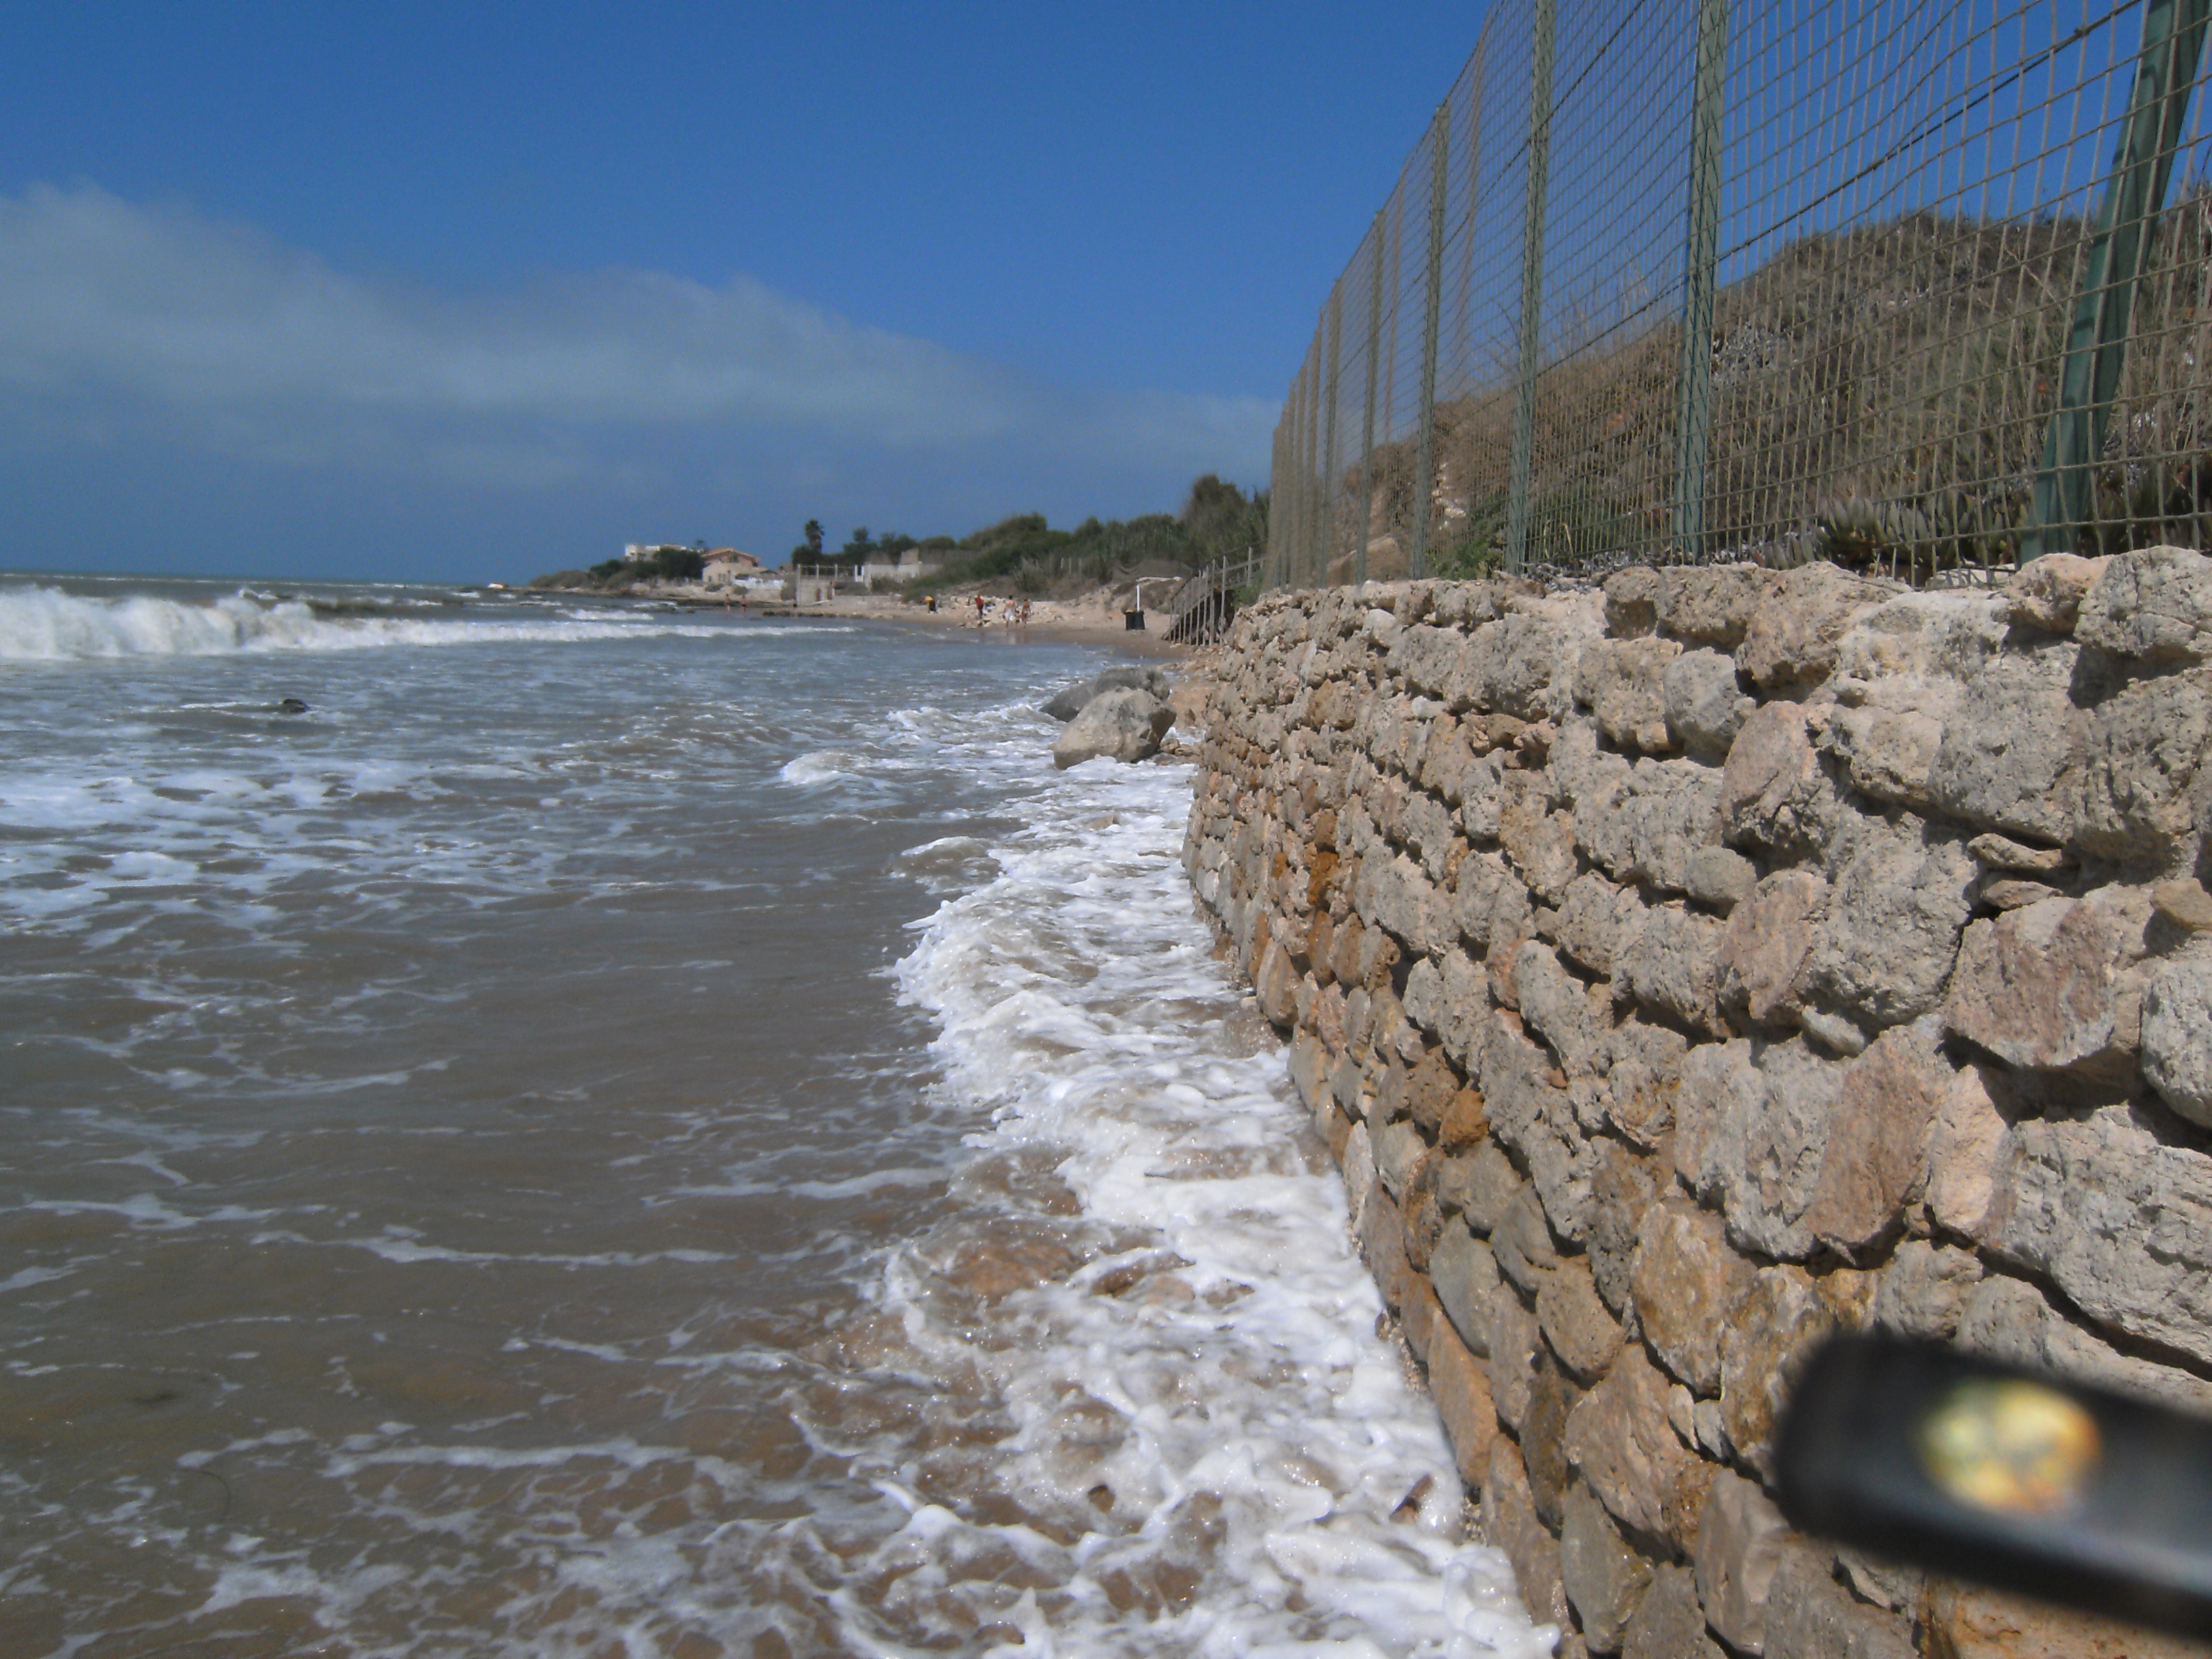  Caucana, a Sel non piace il piano di ripascimento della spiaggia: “Può far crollare le mura bizantine”